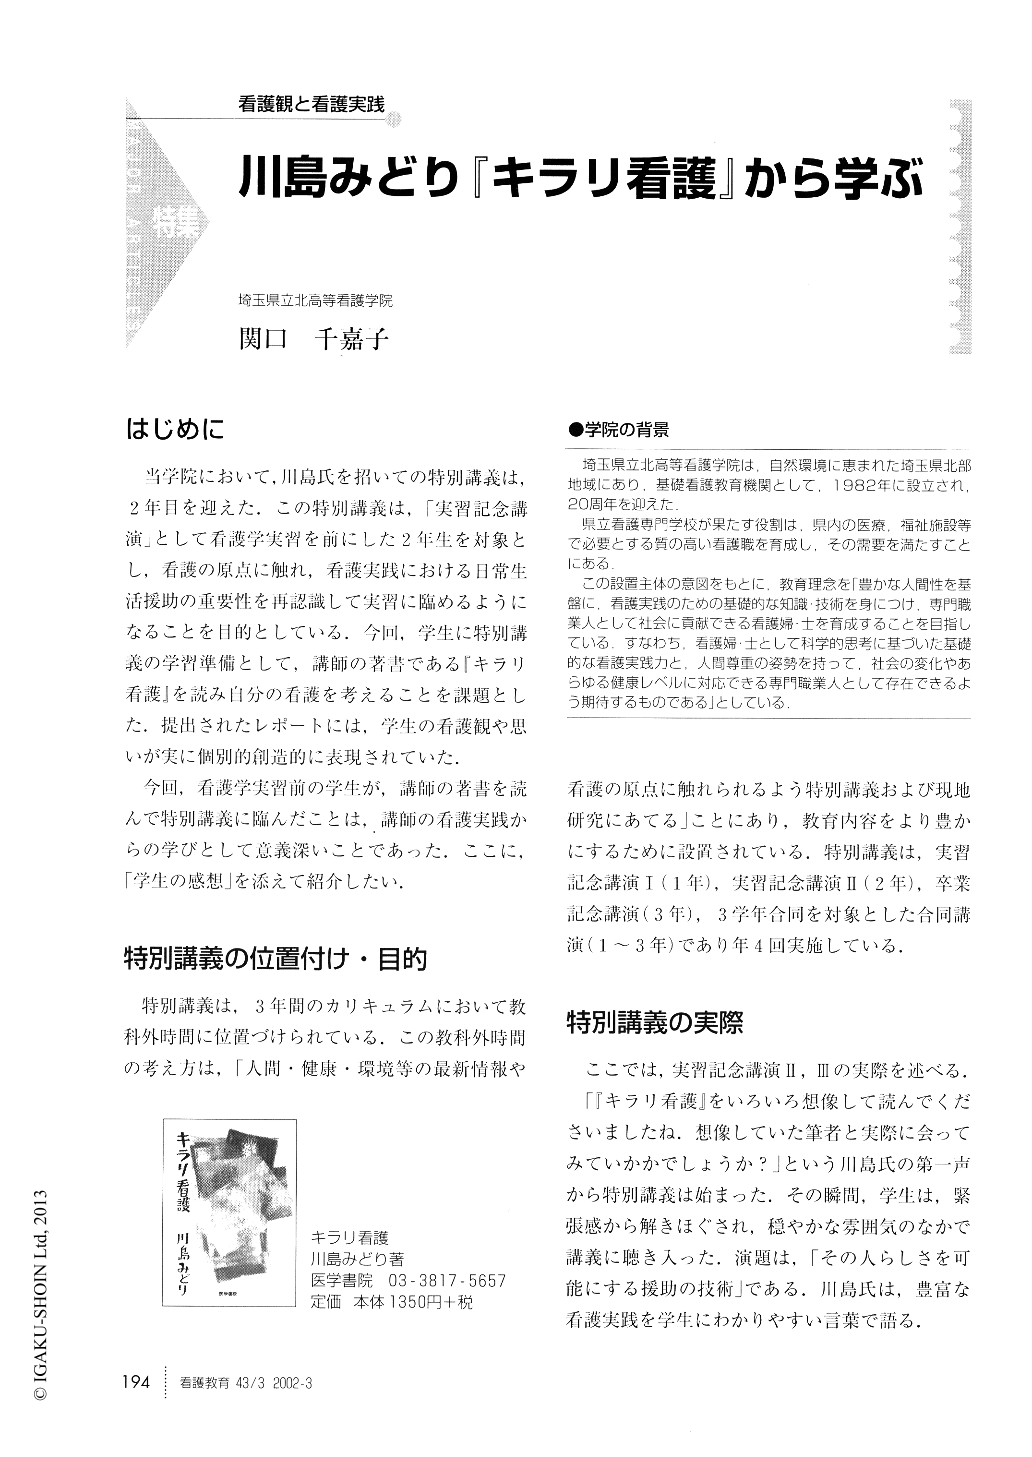 川島みどり キラリ看護 から学ぶ 看護教育 43巻3号 医書 Jp